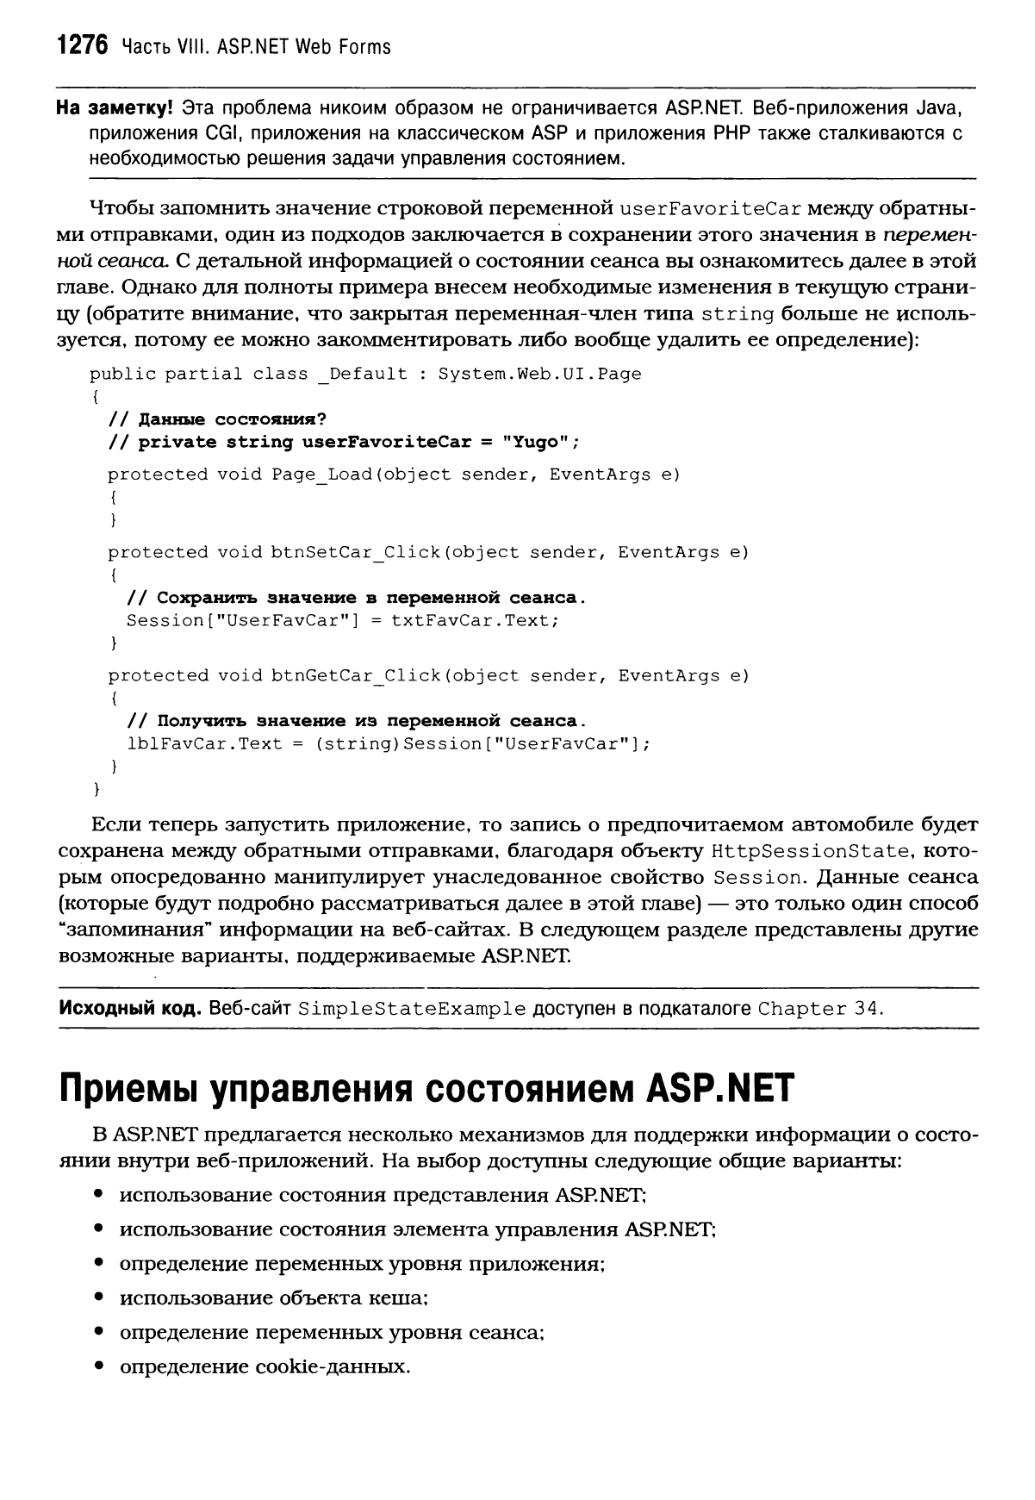 Приемы управления состоянием ASP.NET